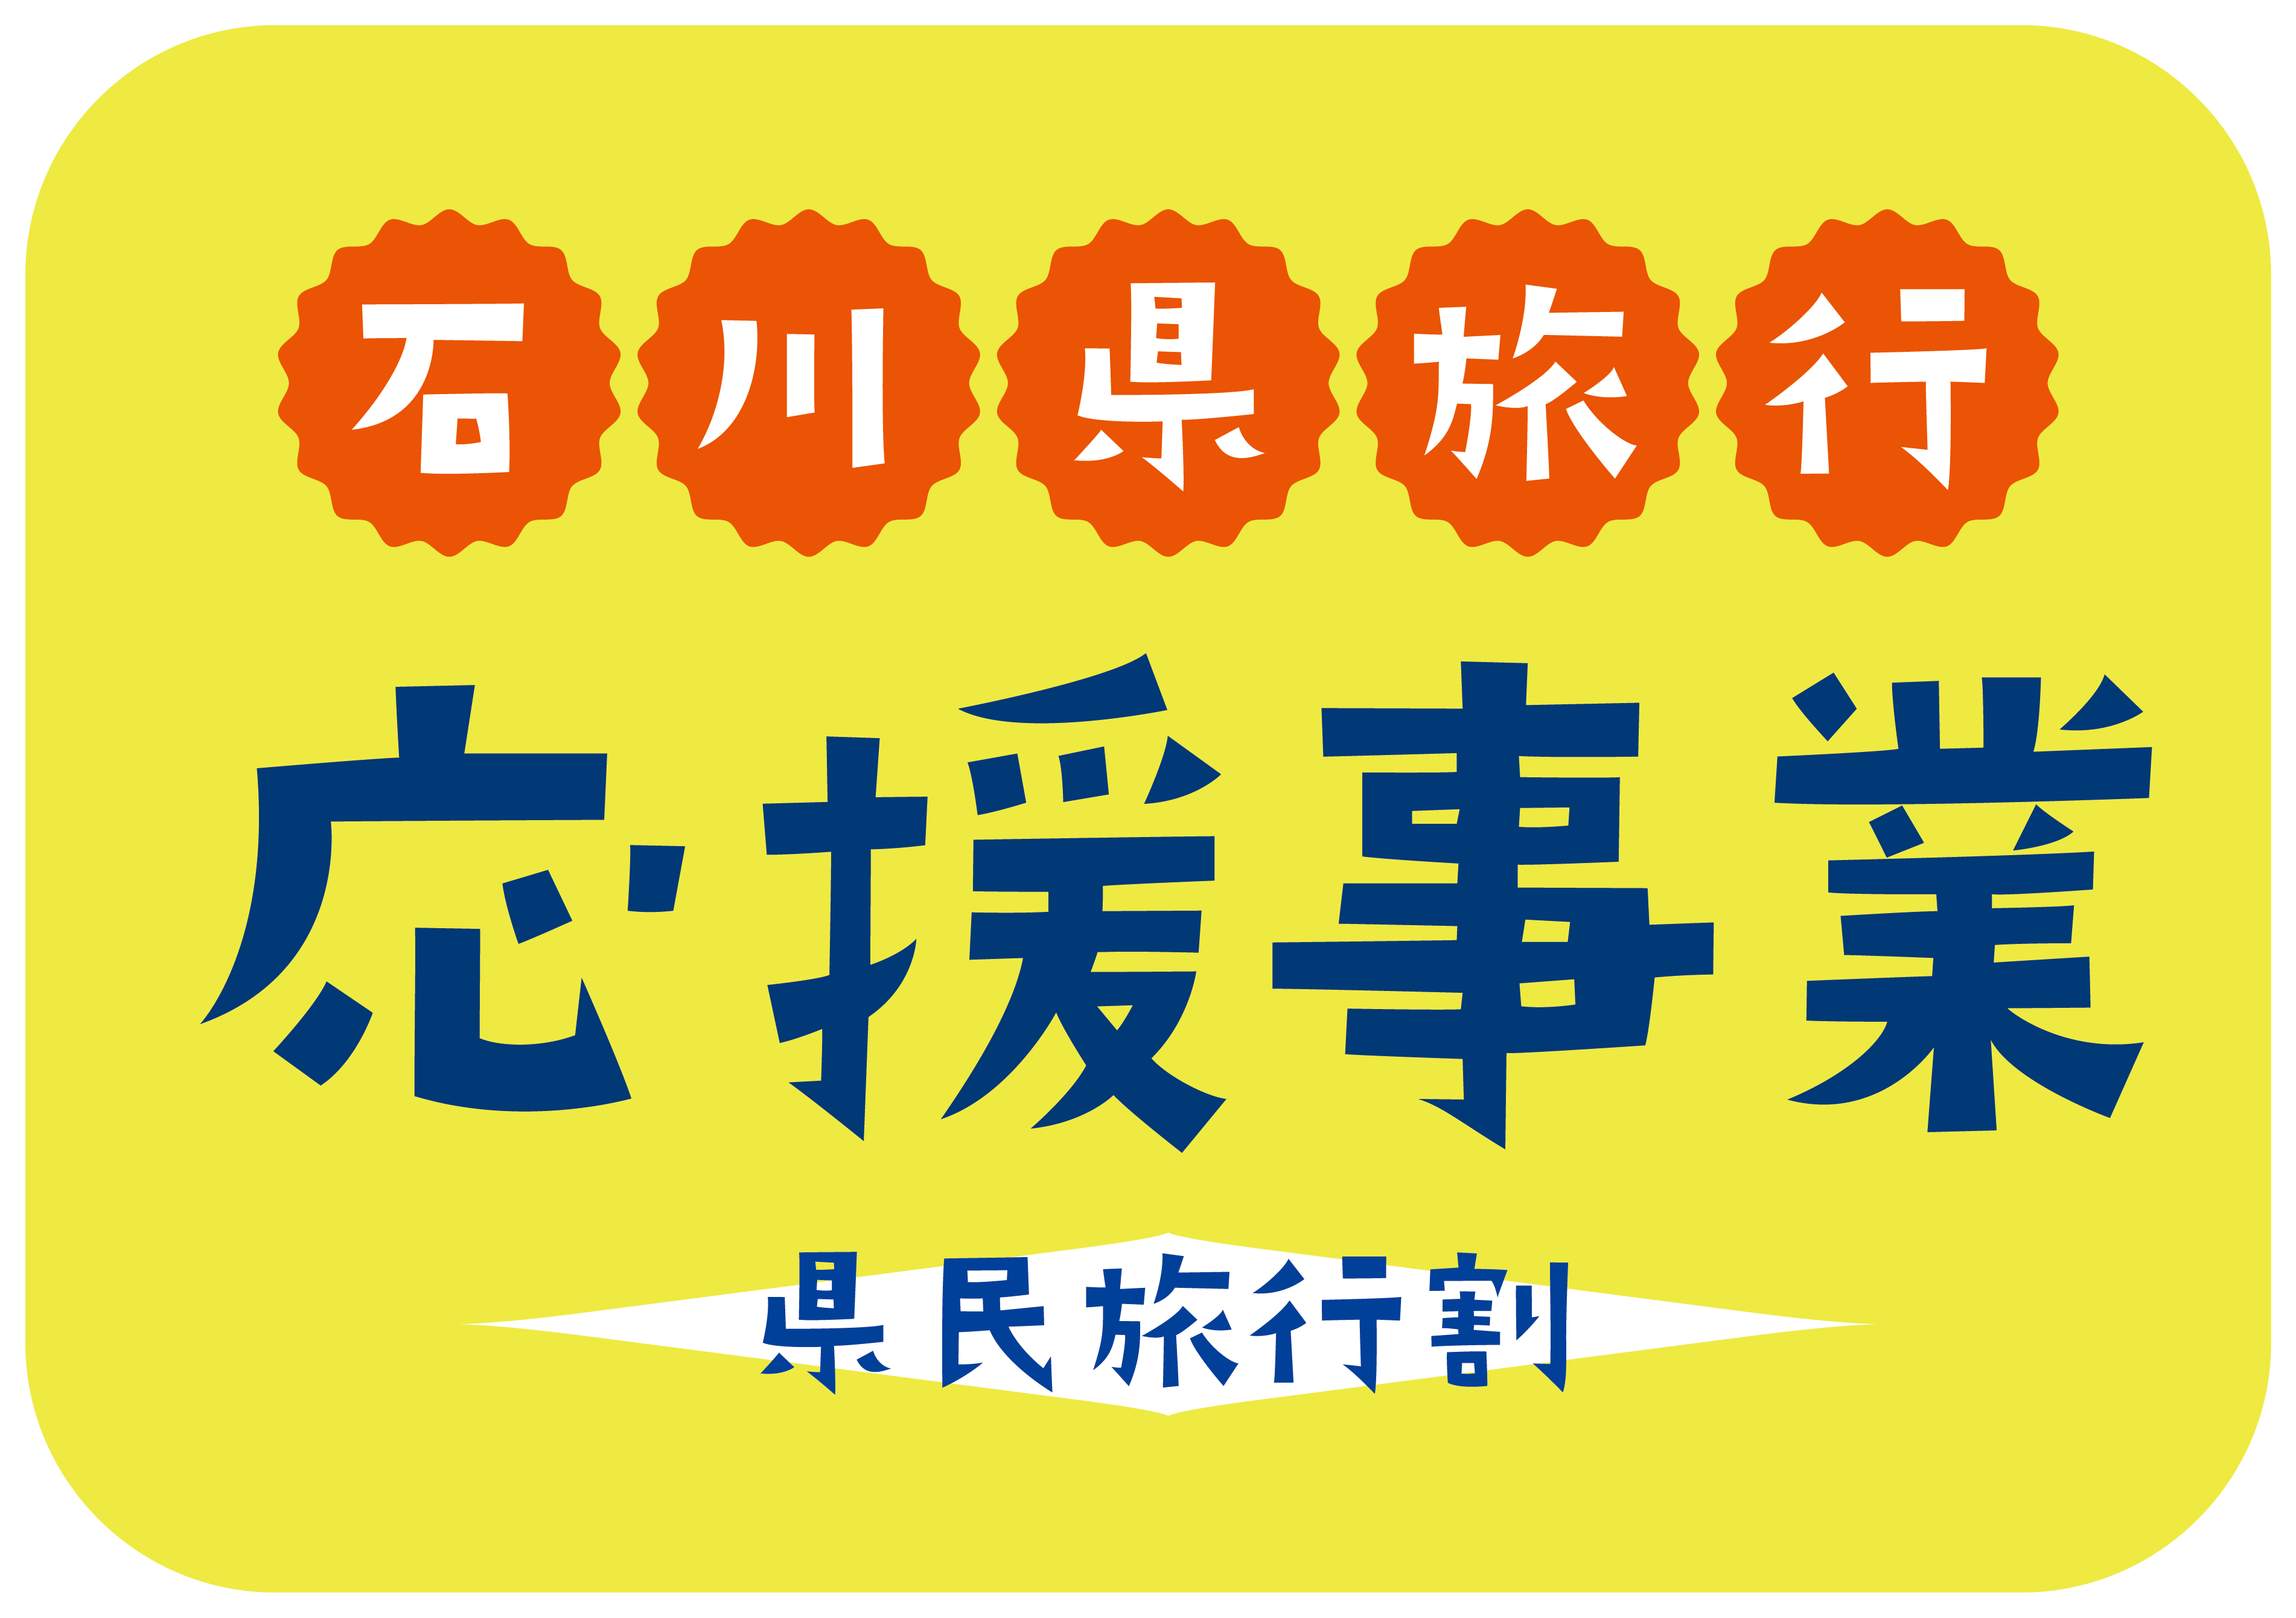 石川県旅行応援事業 県民旅行割